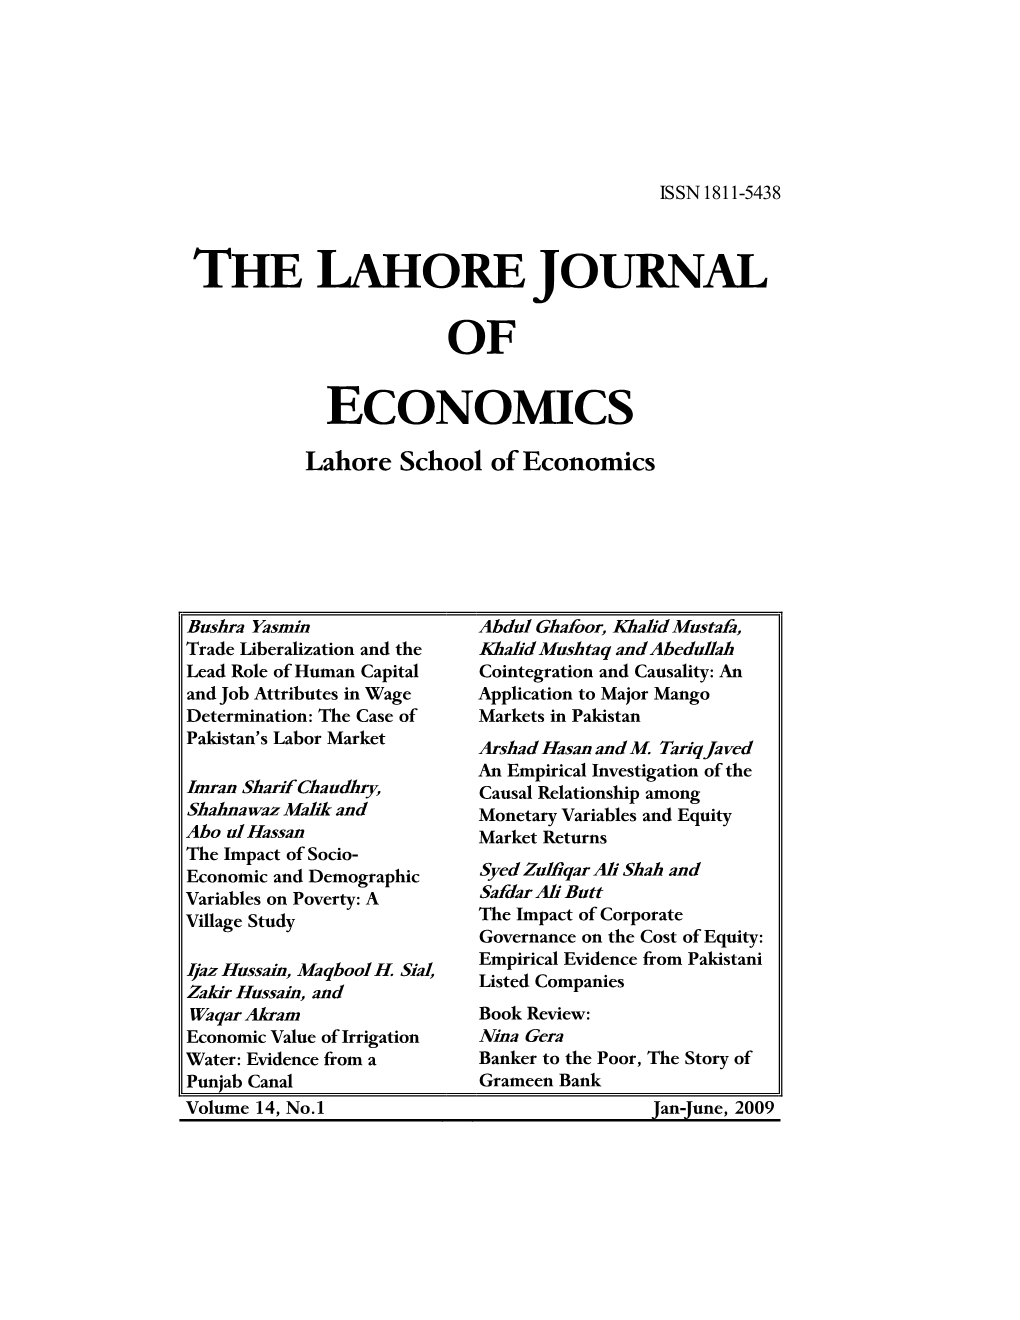 THE LAHORE JOURNAL of ECONOMICS Lahore School of Economics